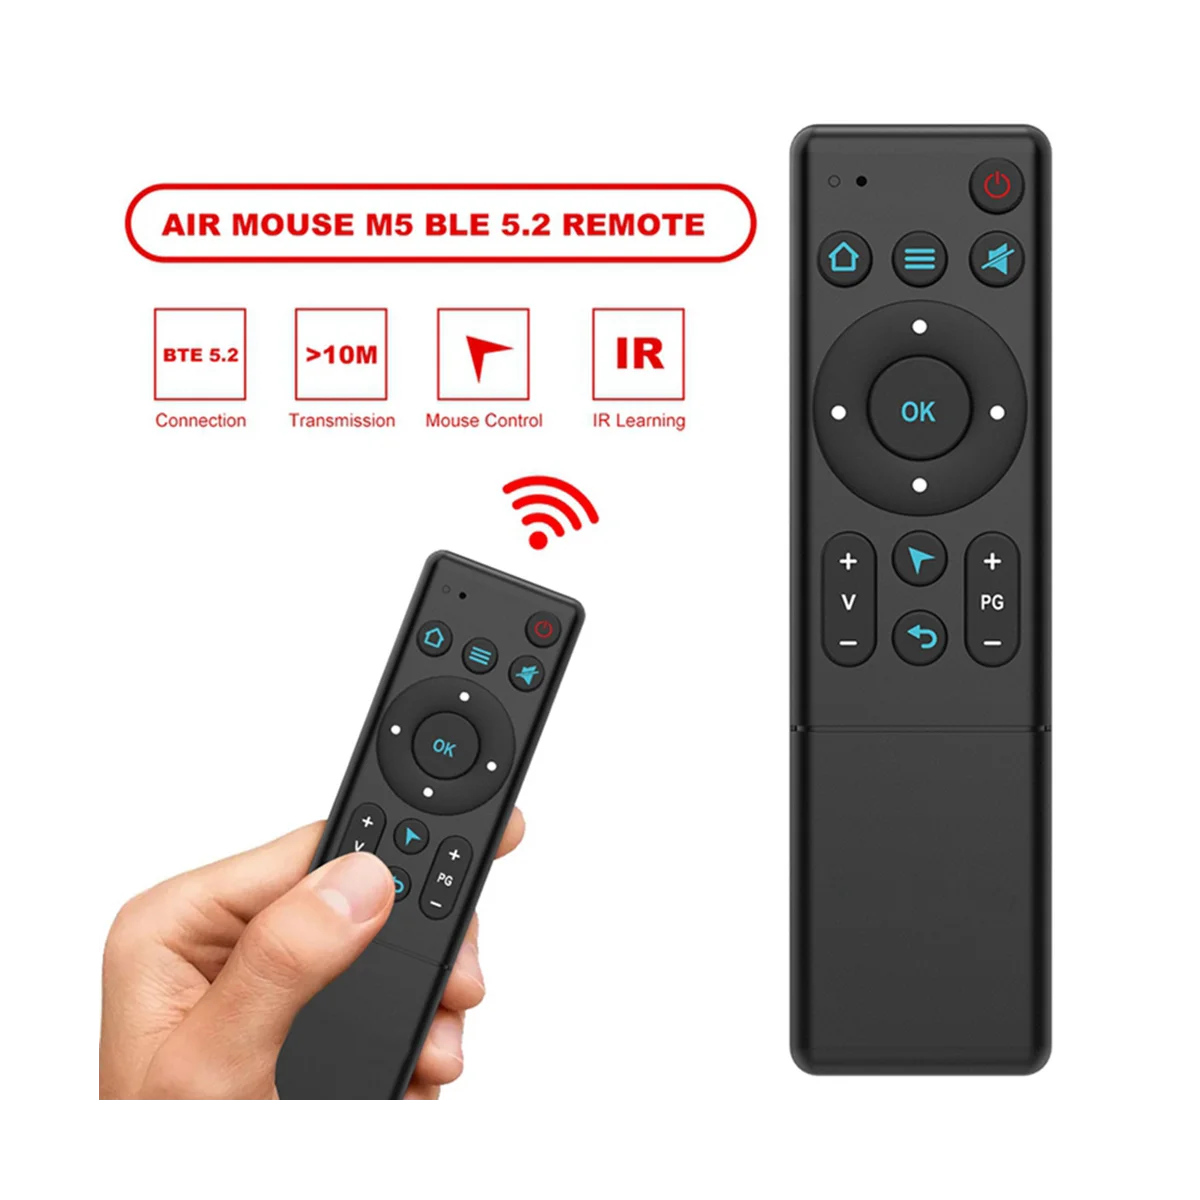 M5 Bluetooth 5.2 Telecomanda Air Mouse-ul fără Fir Infraroșu Control de la Distanță pentru TV Box Proiector și PC Smart Home